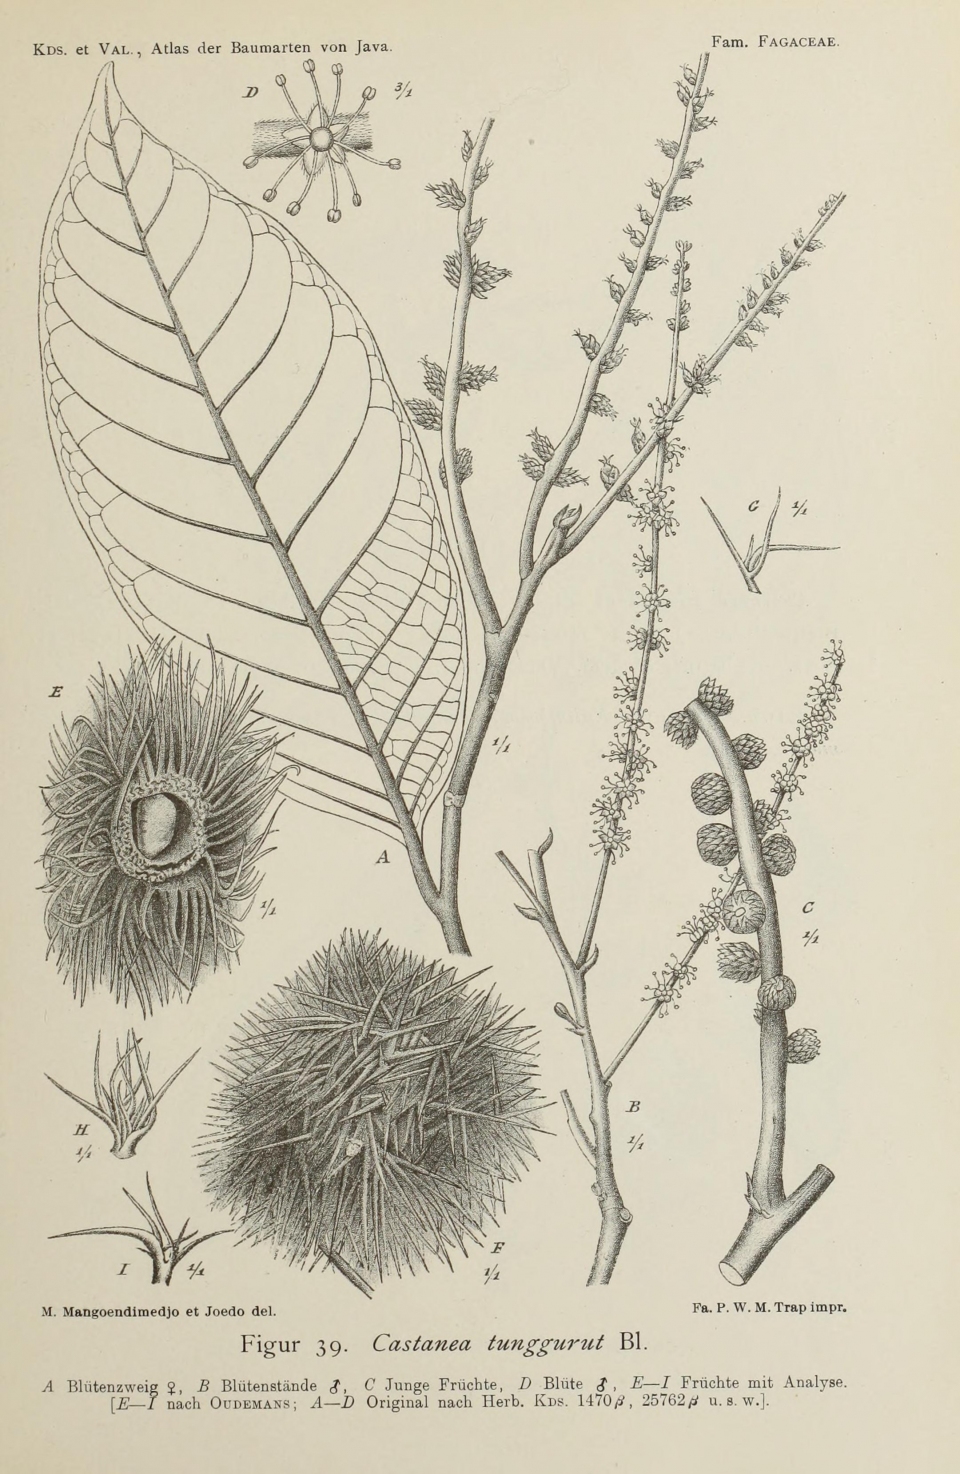 Castanopsis tungurrut